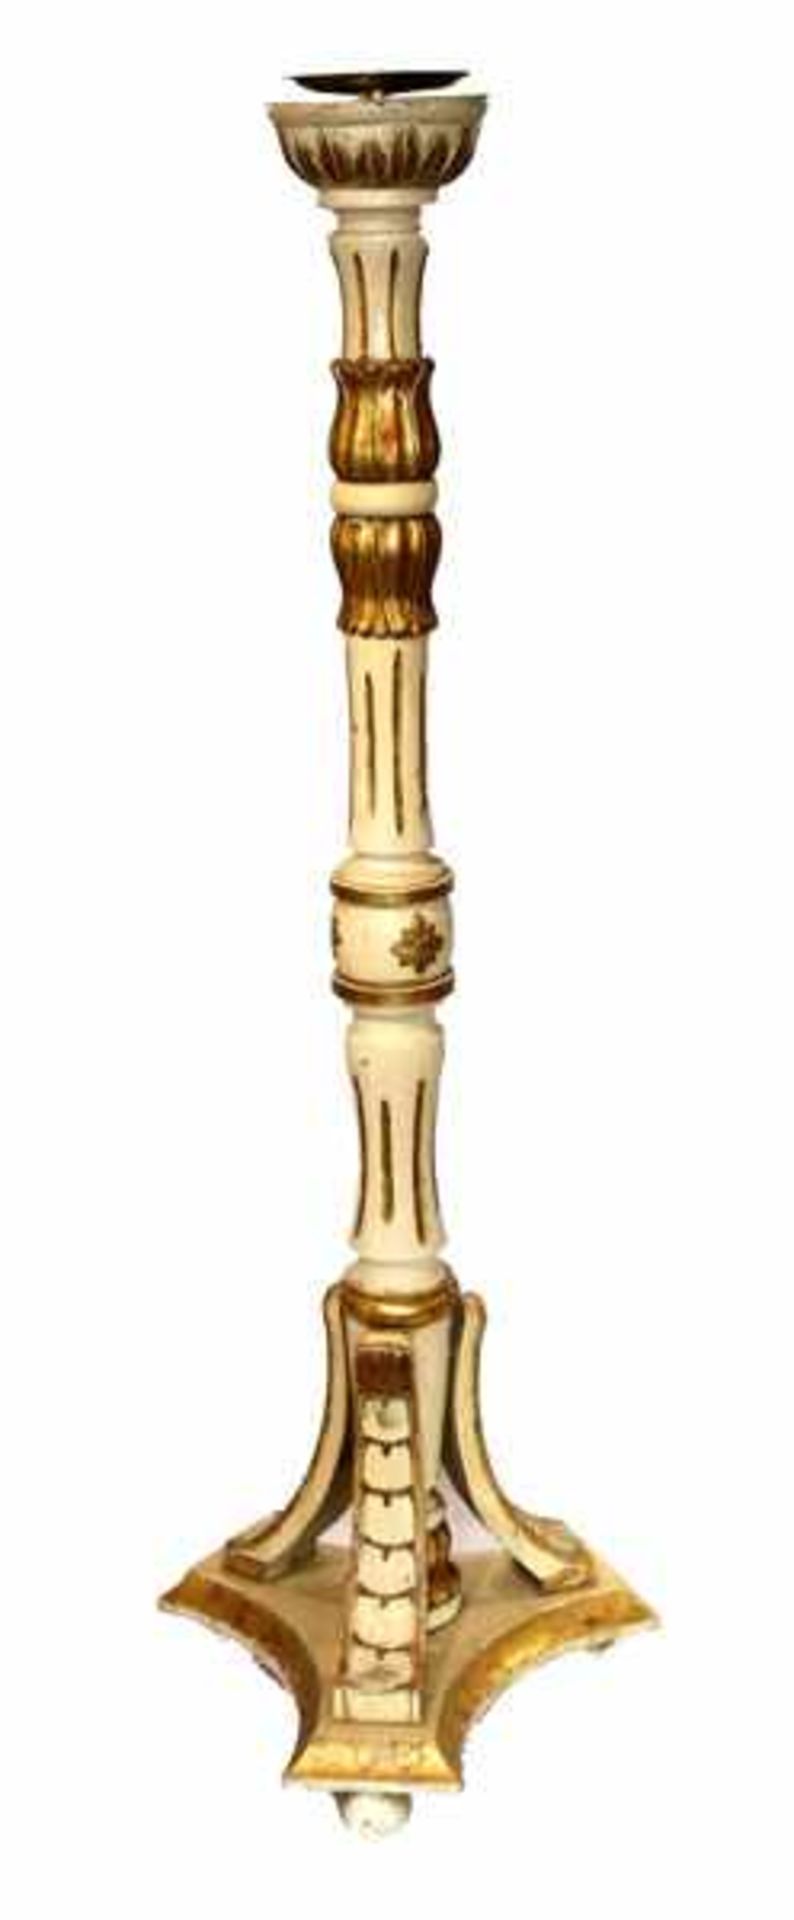 Holz Kerzenleuchter, beige/gold gefaßt, H 122 cm, D 40 cm, Gebrauchsspuren, teils Farbablösungen